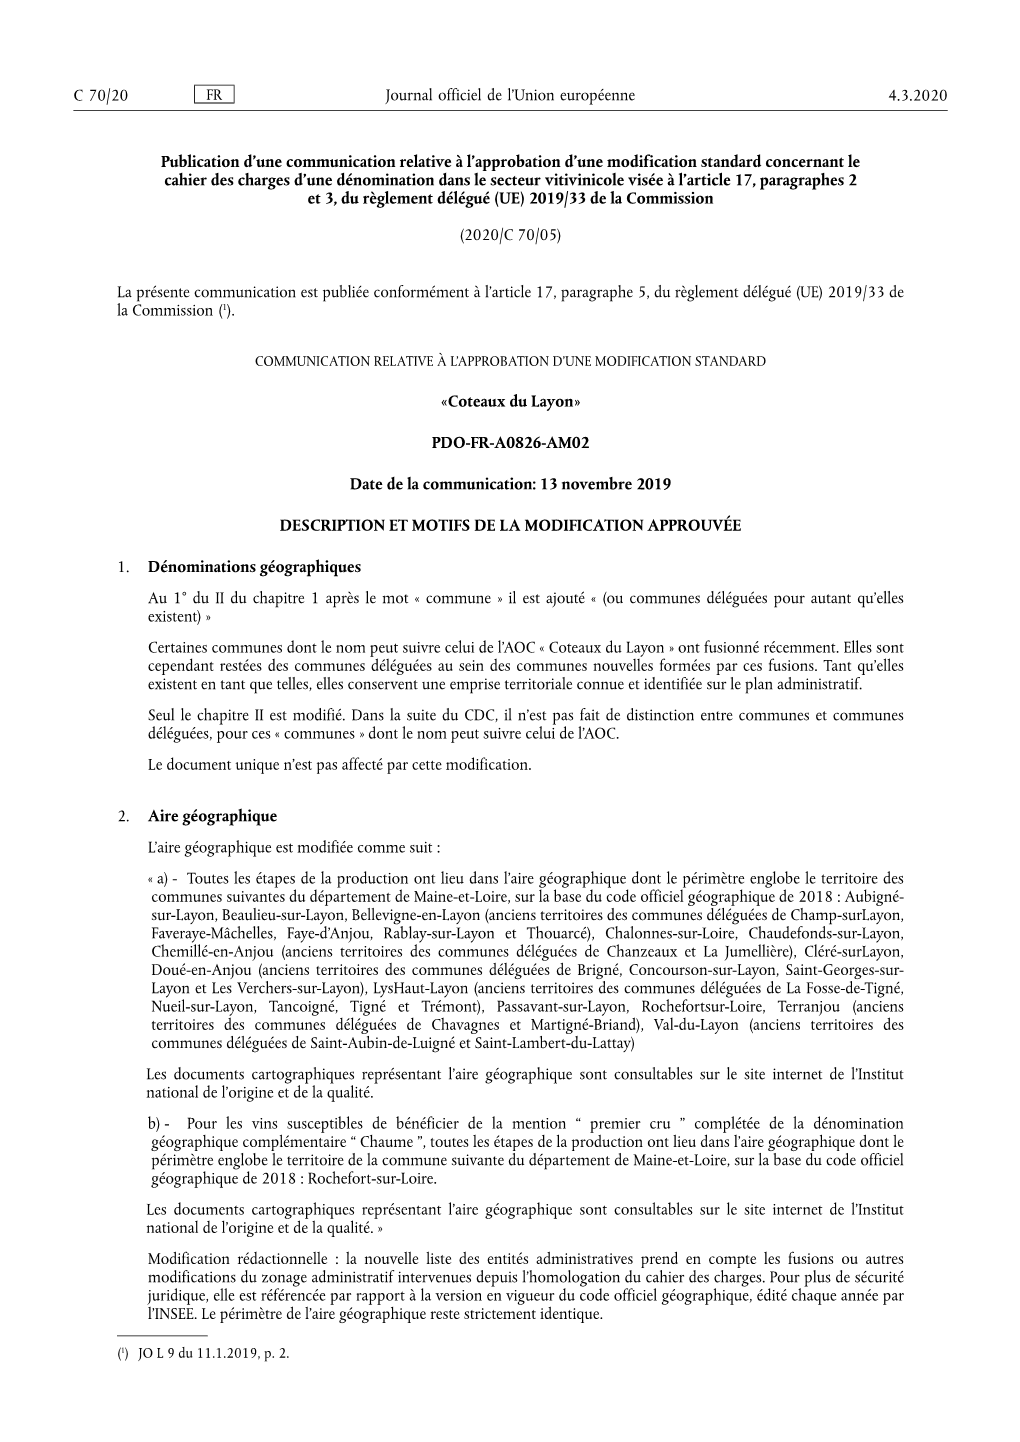 Publication D'une Communication Relative À L'approbation D'une Modification Standard Concernant Le Cahier Des Charges